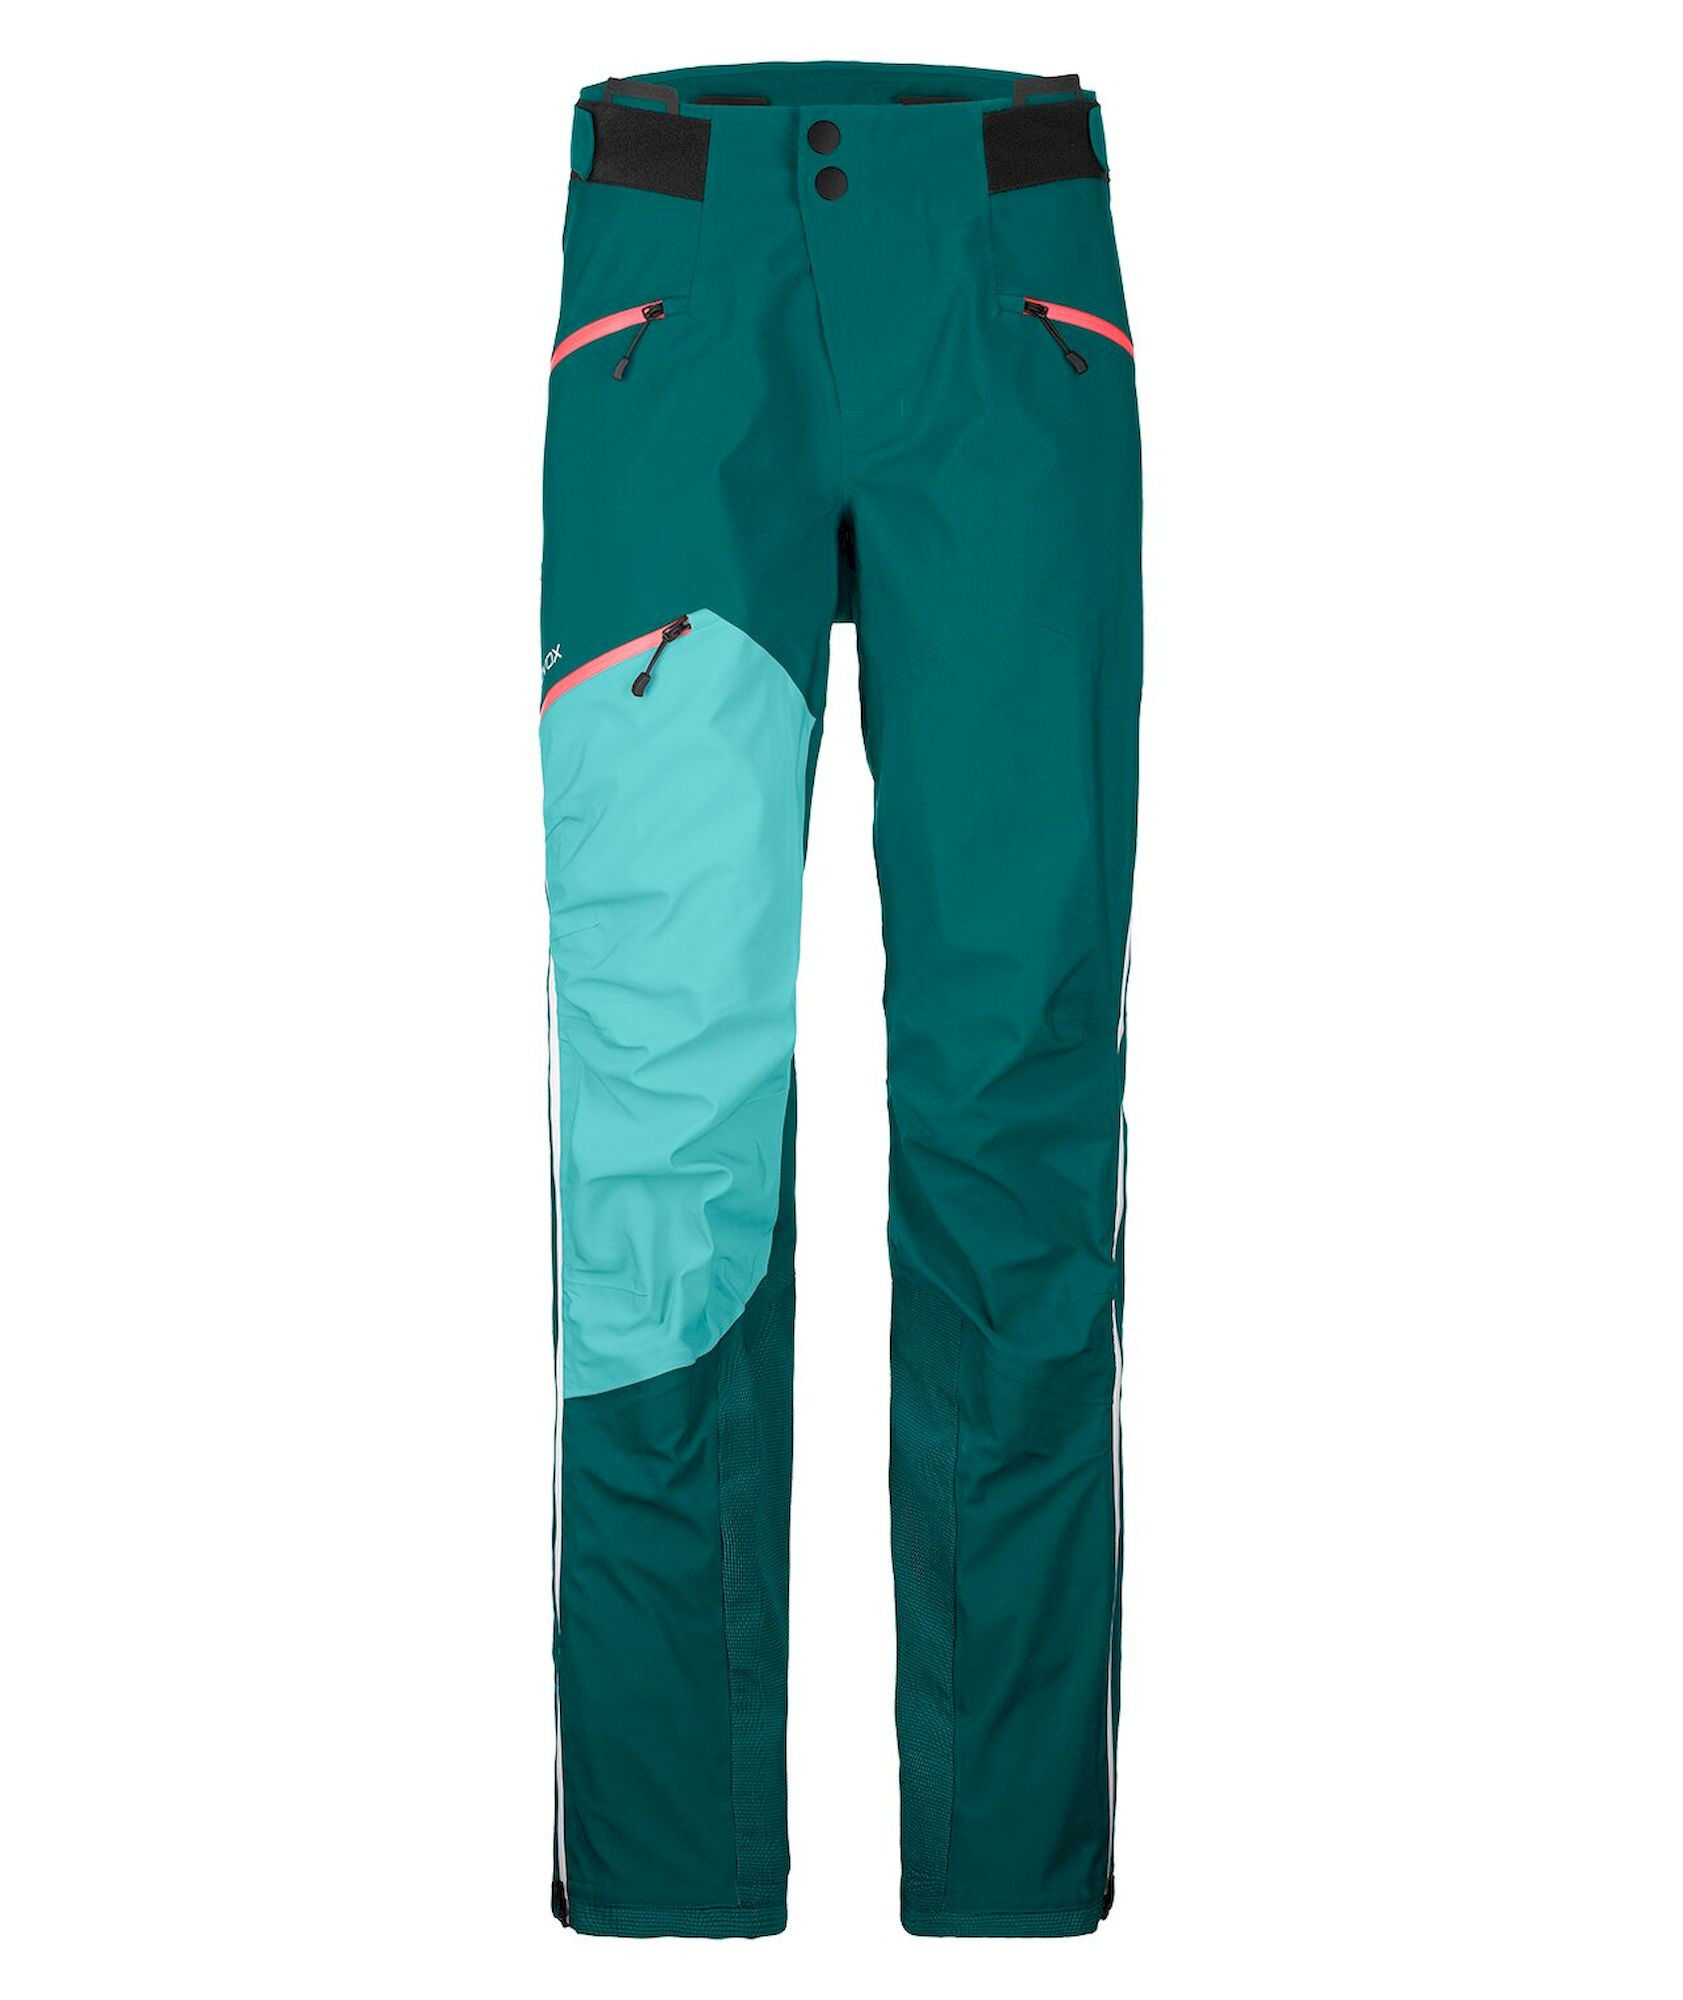 Ortovox Westalpen 3L Pants - Mountaineering trousers - Women's